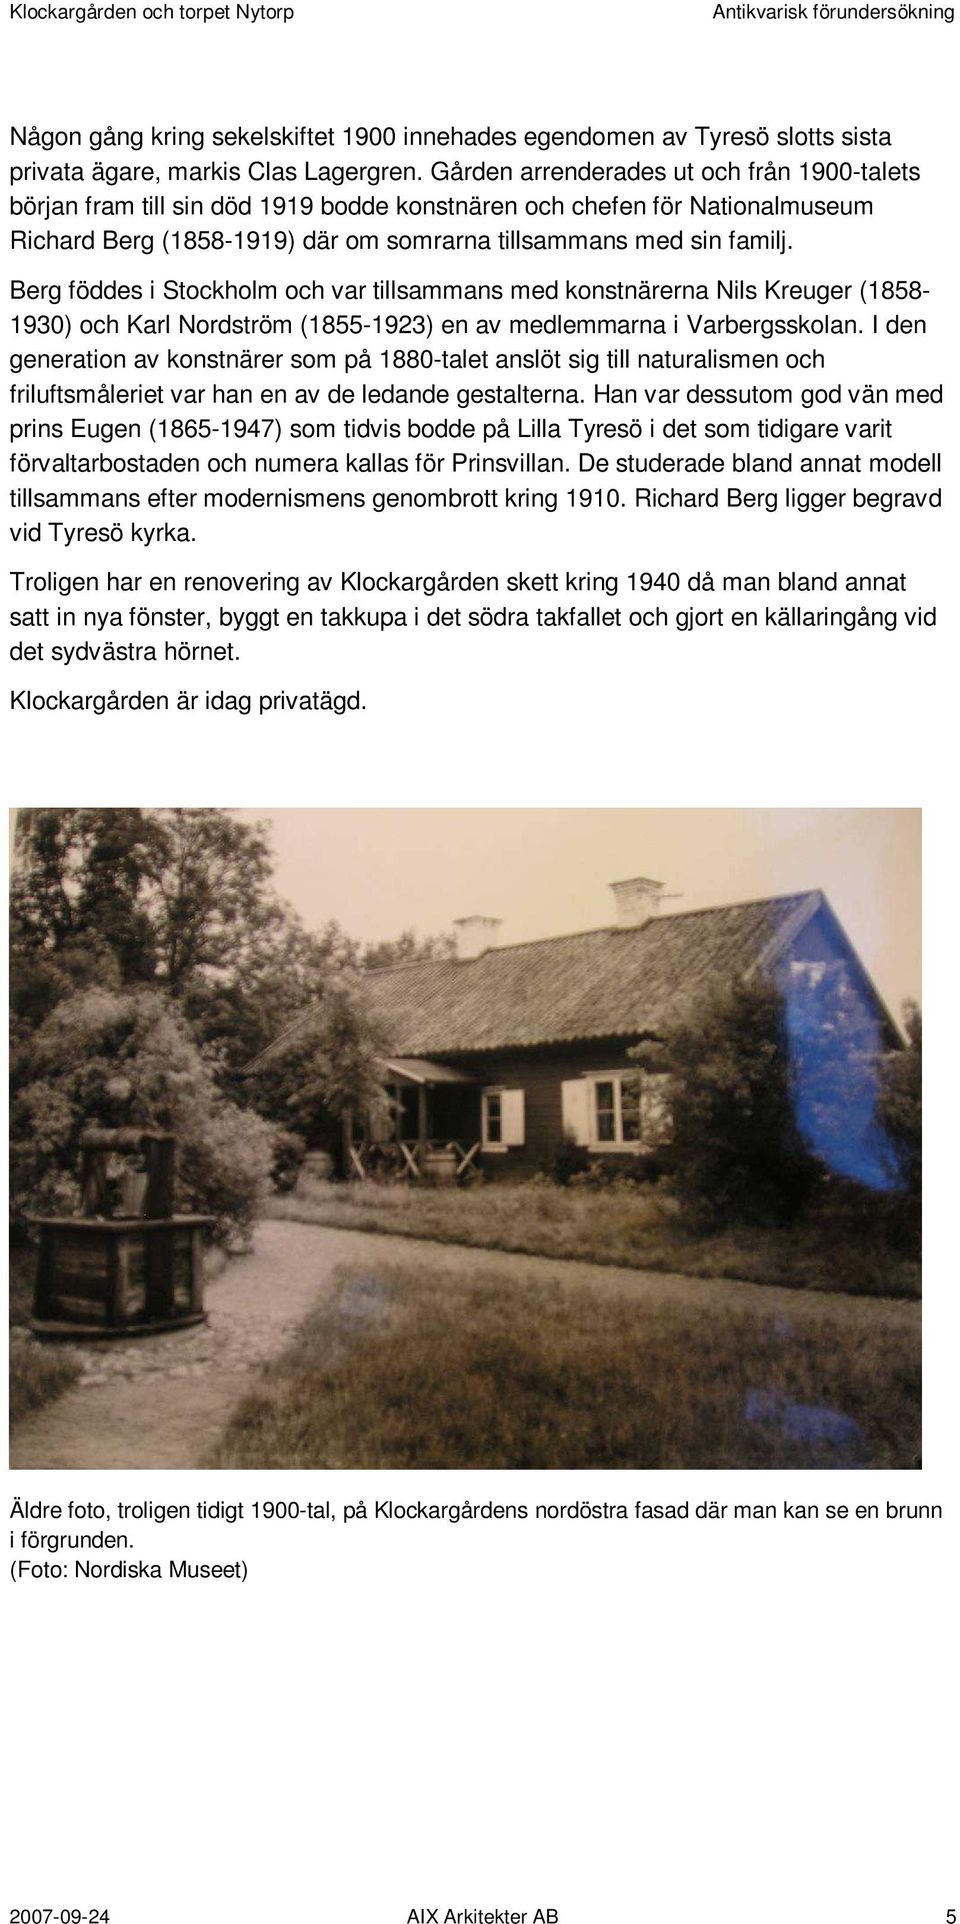 Berg föddes i Stockholm och var tillsammans med konstnärerna Nils Kreuger (1858-1930) och Karl Nordström (1855-1923) en av medlemmarna i Varbergsskolan.